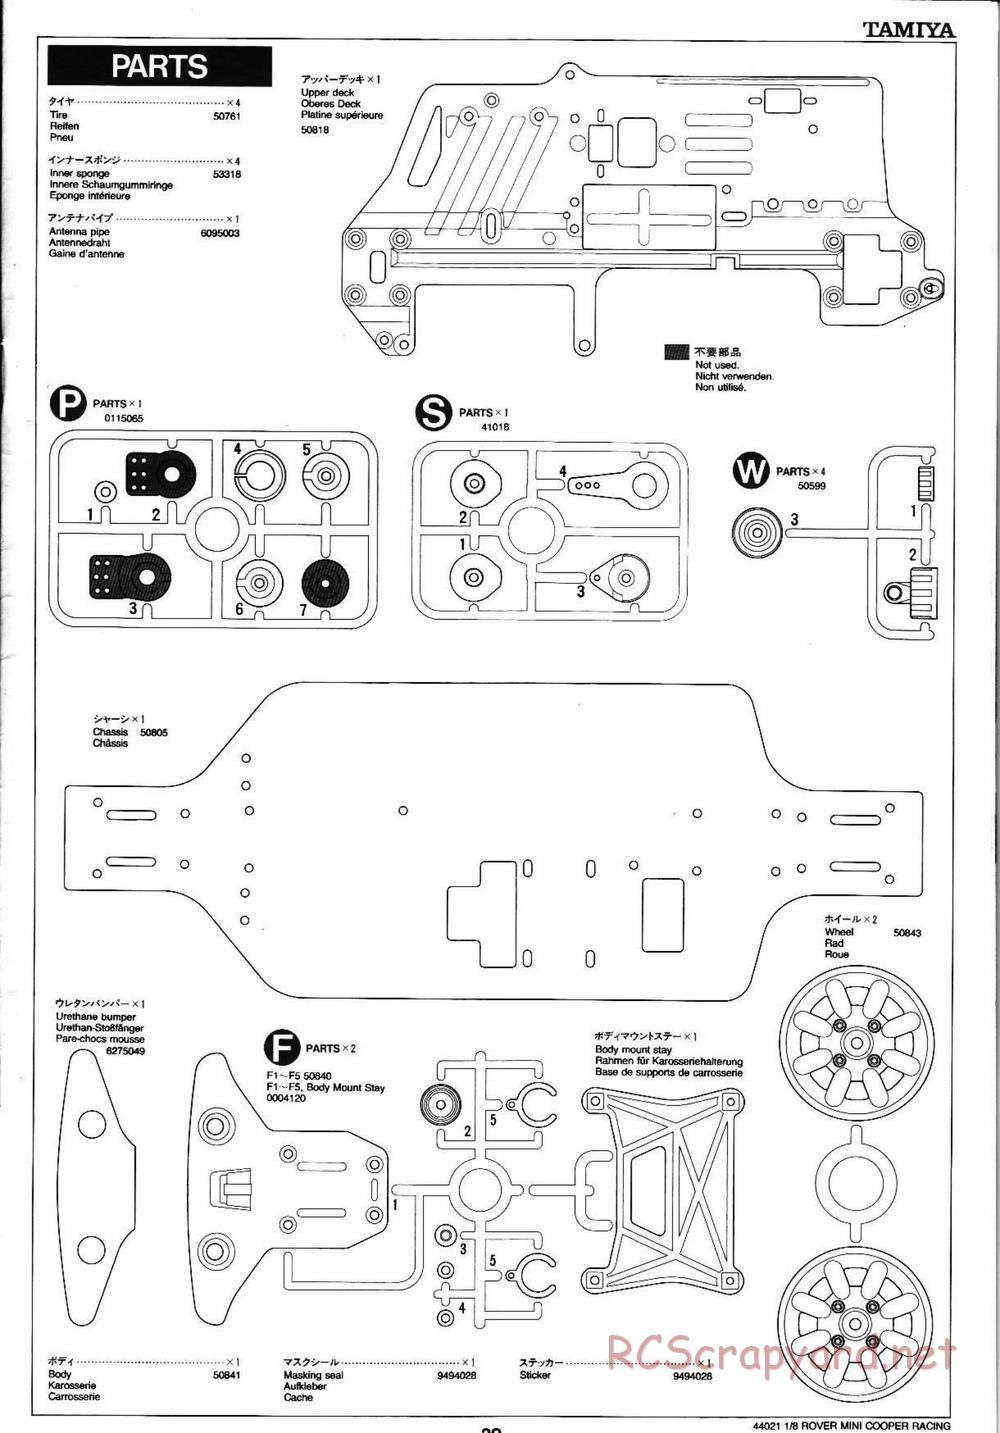 Tamiya - Rover Mini Cooper Racing - TG10 Mk.1 Chassis - Manual - Page 29